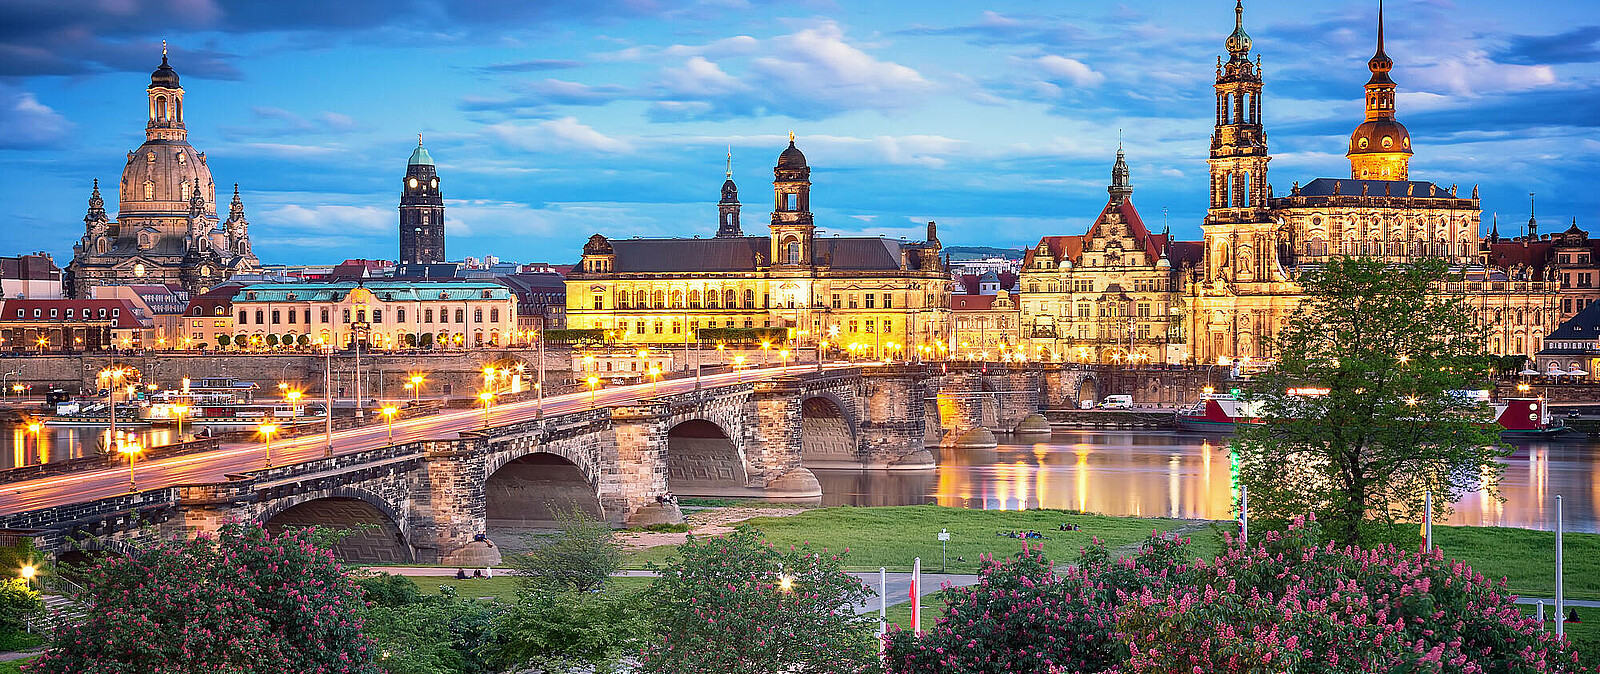 Lassen Sie Ihre Seele baumeln bei einem gemütlichen Stadtrundgang und Spaziergang durch Dresden, garniert mit kulinarischen Köstlichkeiten und Speisen an schönen Wegpunkten und dazu ein Konzert im Dresdner Zwinger als krönendes Highlight.